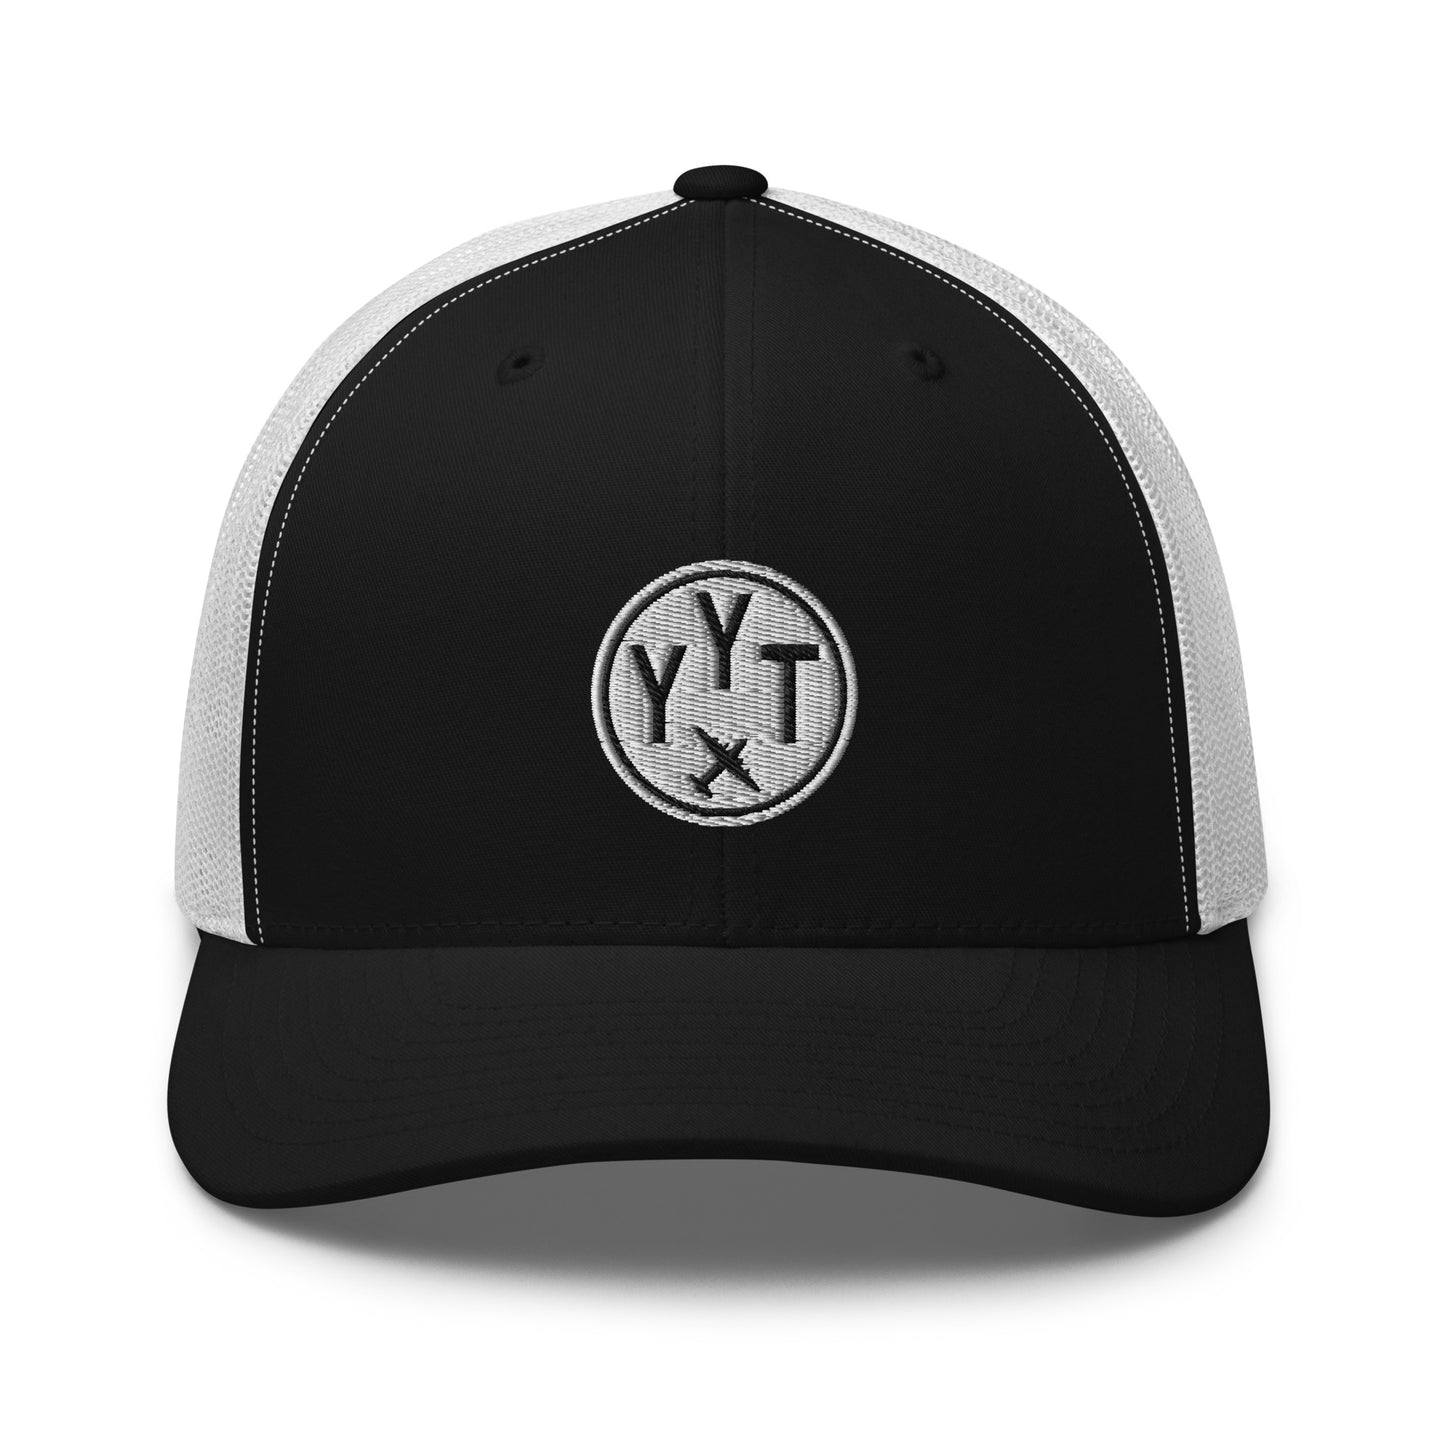 Roundel Trucker Hat - Black & White • YYT St. John's • YHM Designs - Image 09